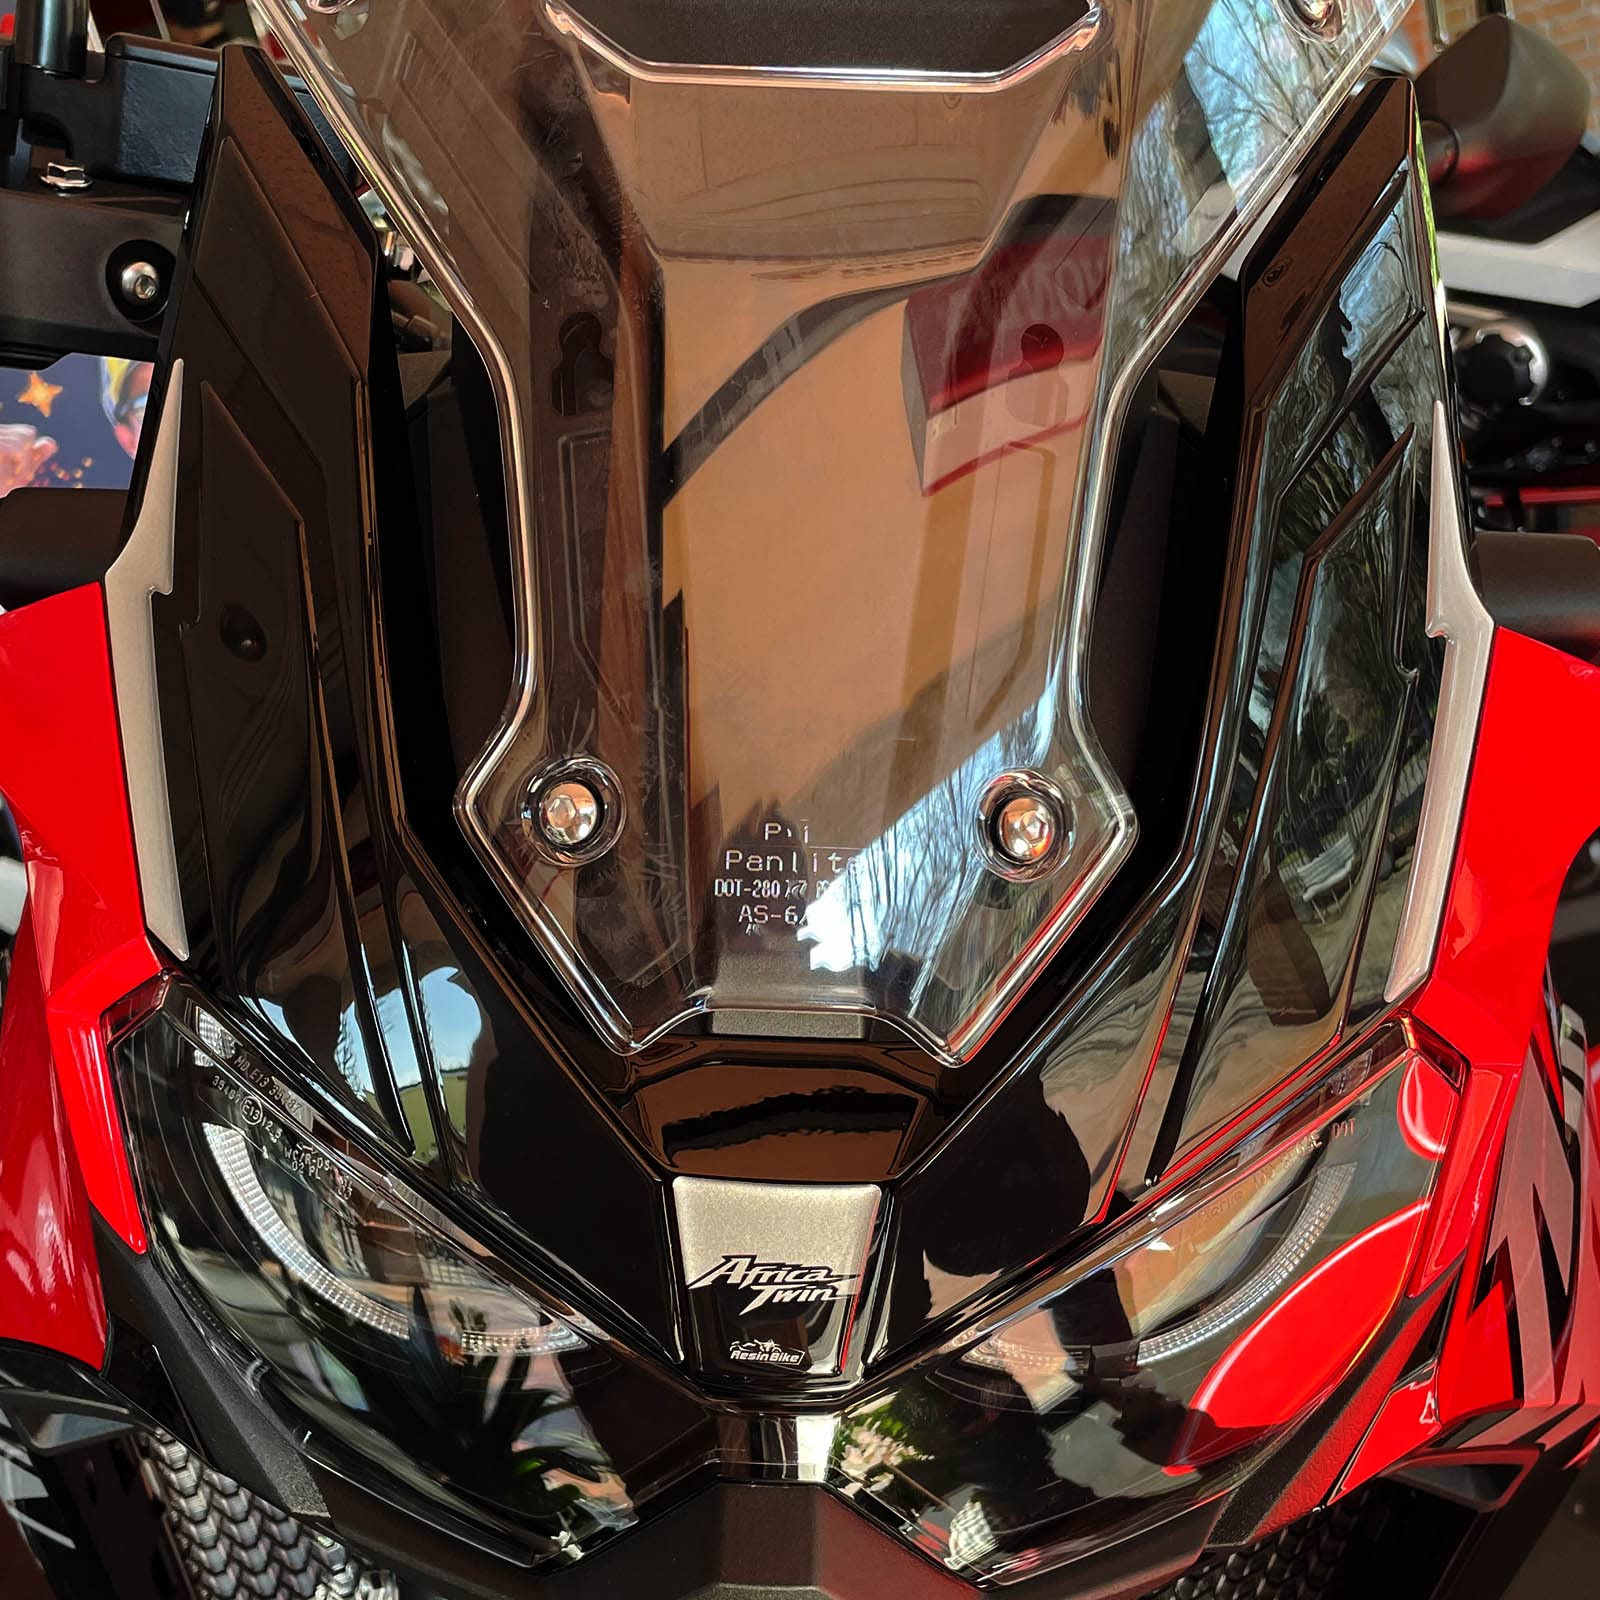 Resin Bike Aufkleber für Motorrad Kompatibel mit Honda Africa Twin CRF 1100 L 2022-2023. Schutz für die vordere Verkleidungsscheibe vor Stößen und Kratzern. 3D-Harzklebstoff - Stickers - Made in Italy von Resin Bike